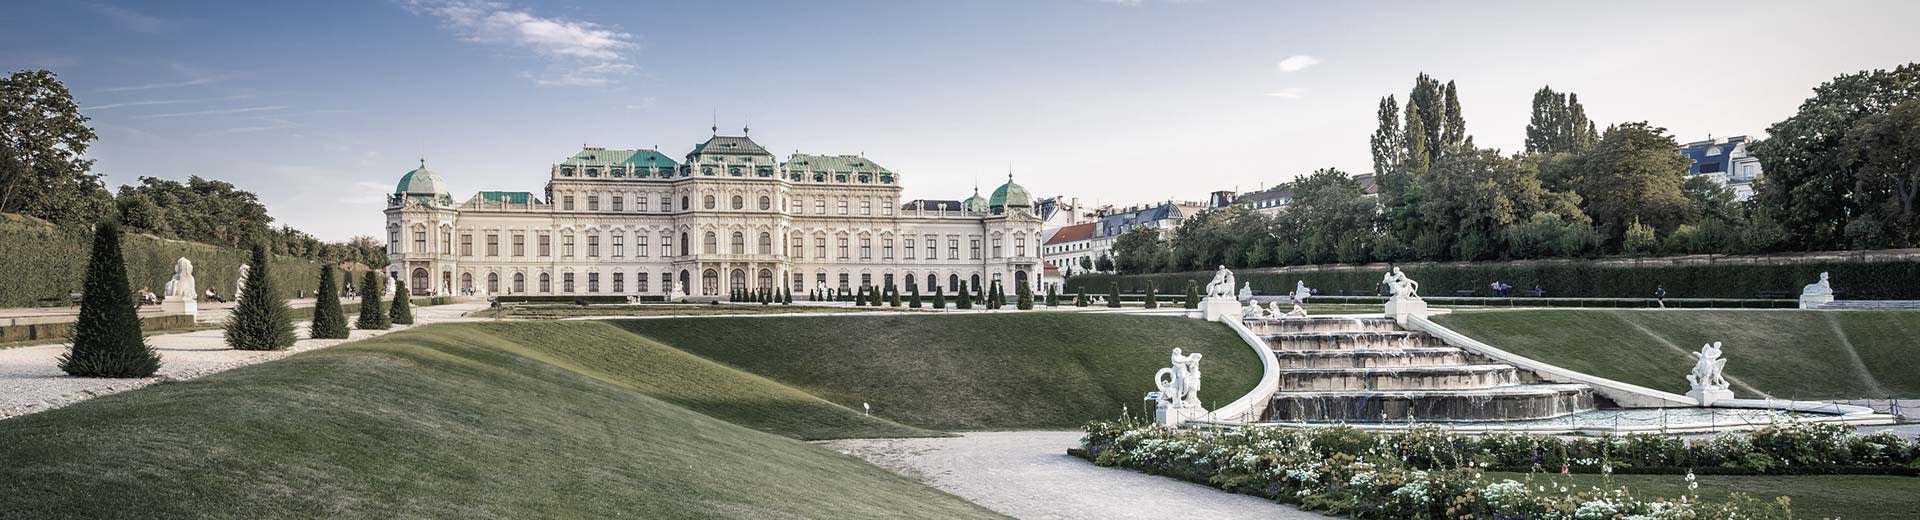 Der weltberühmte Schönbrunn-Palast liegt an einem schönen, klaren Tag unter seinen mitbrennbar gepflegten Rasenflächen.